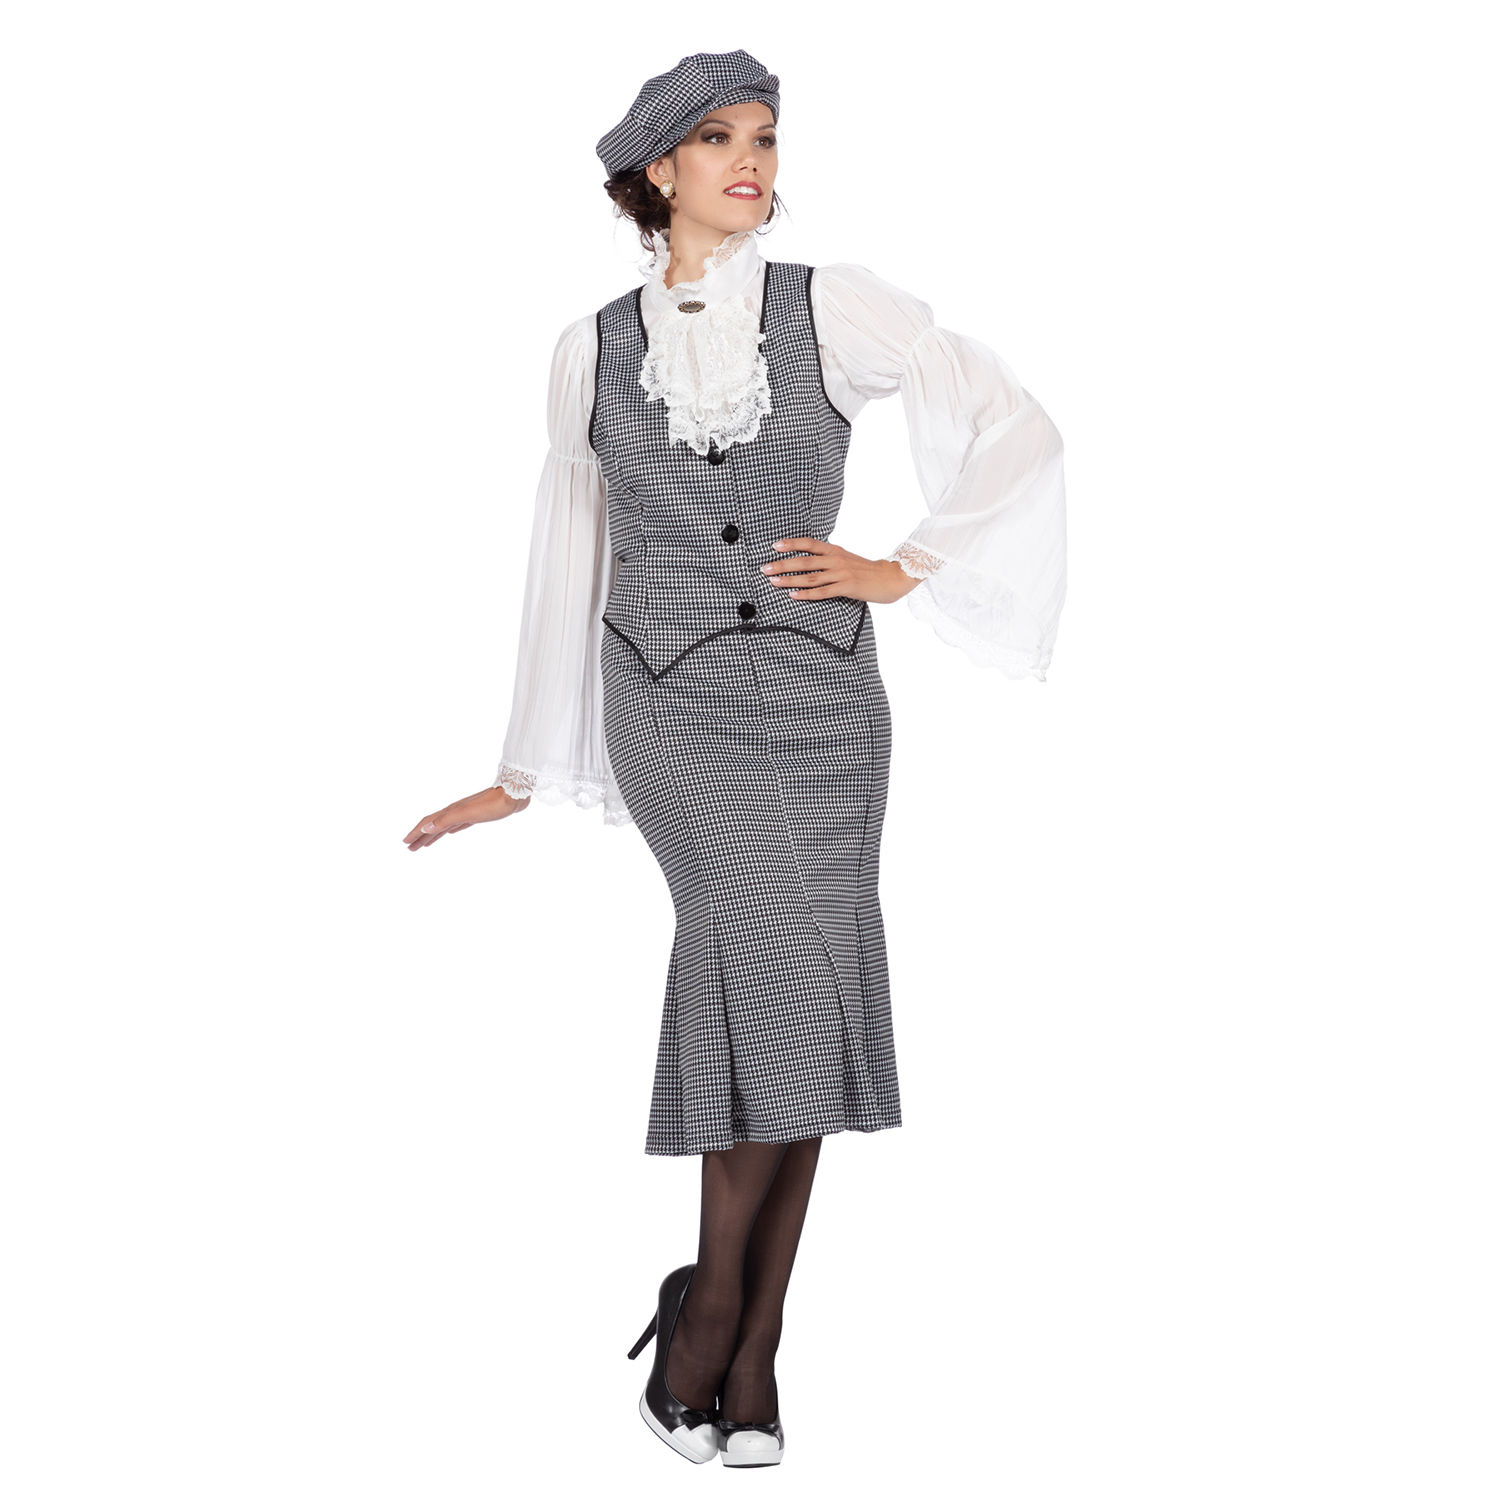 Damen-Kostüm 20er Jahre Polly, 3-teilig mit Mütze, Weste & Rock, Gr. 34